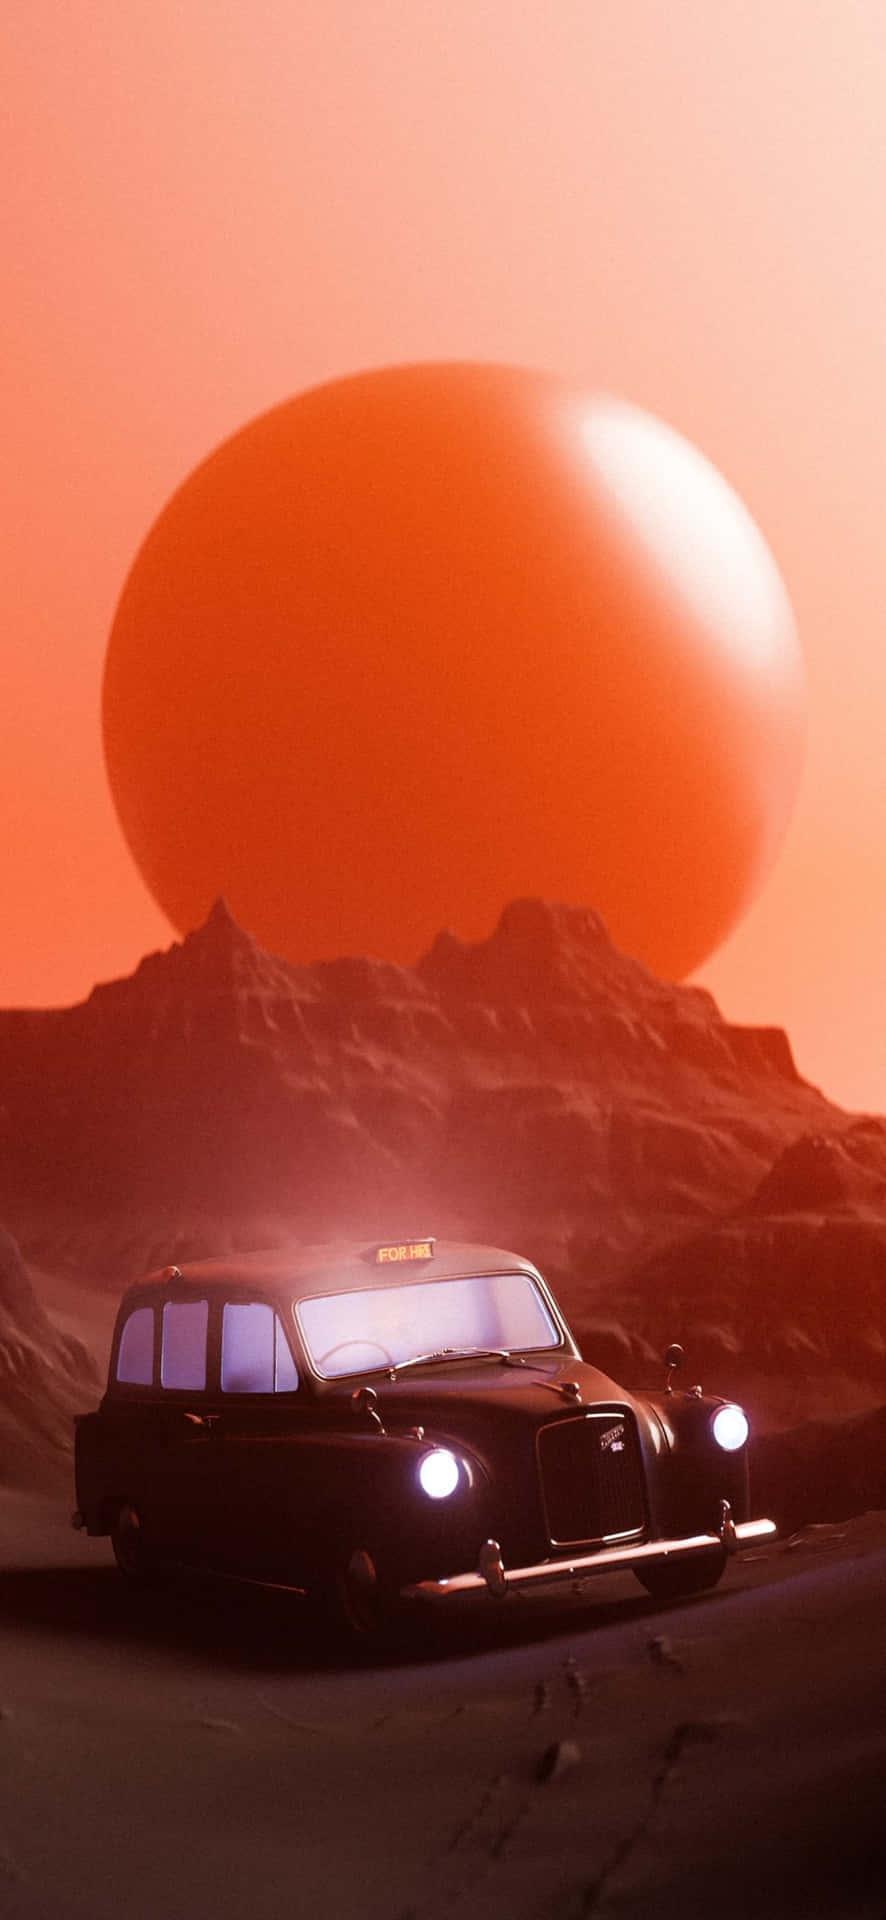 Retro Futuristic Taxion Mars Wallpaper